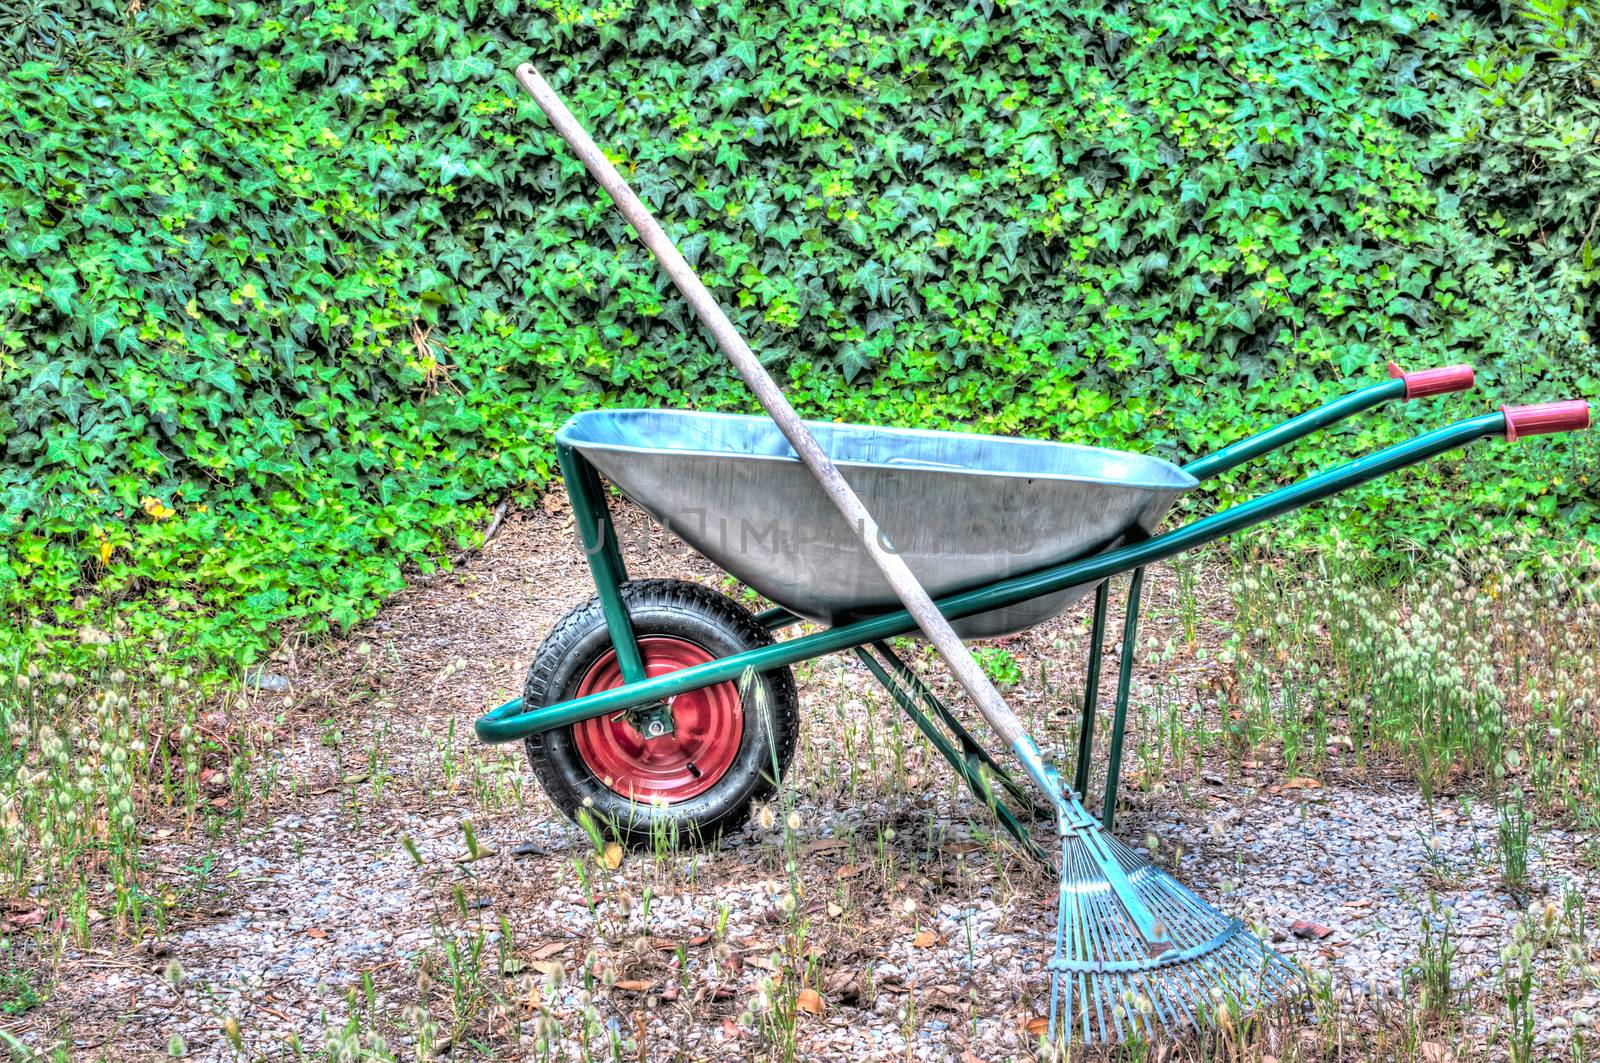 hdr of wheelbarrow in a garden and a rake